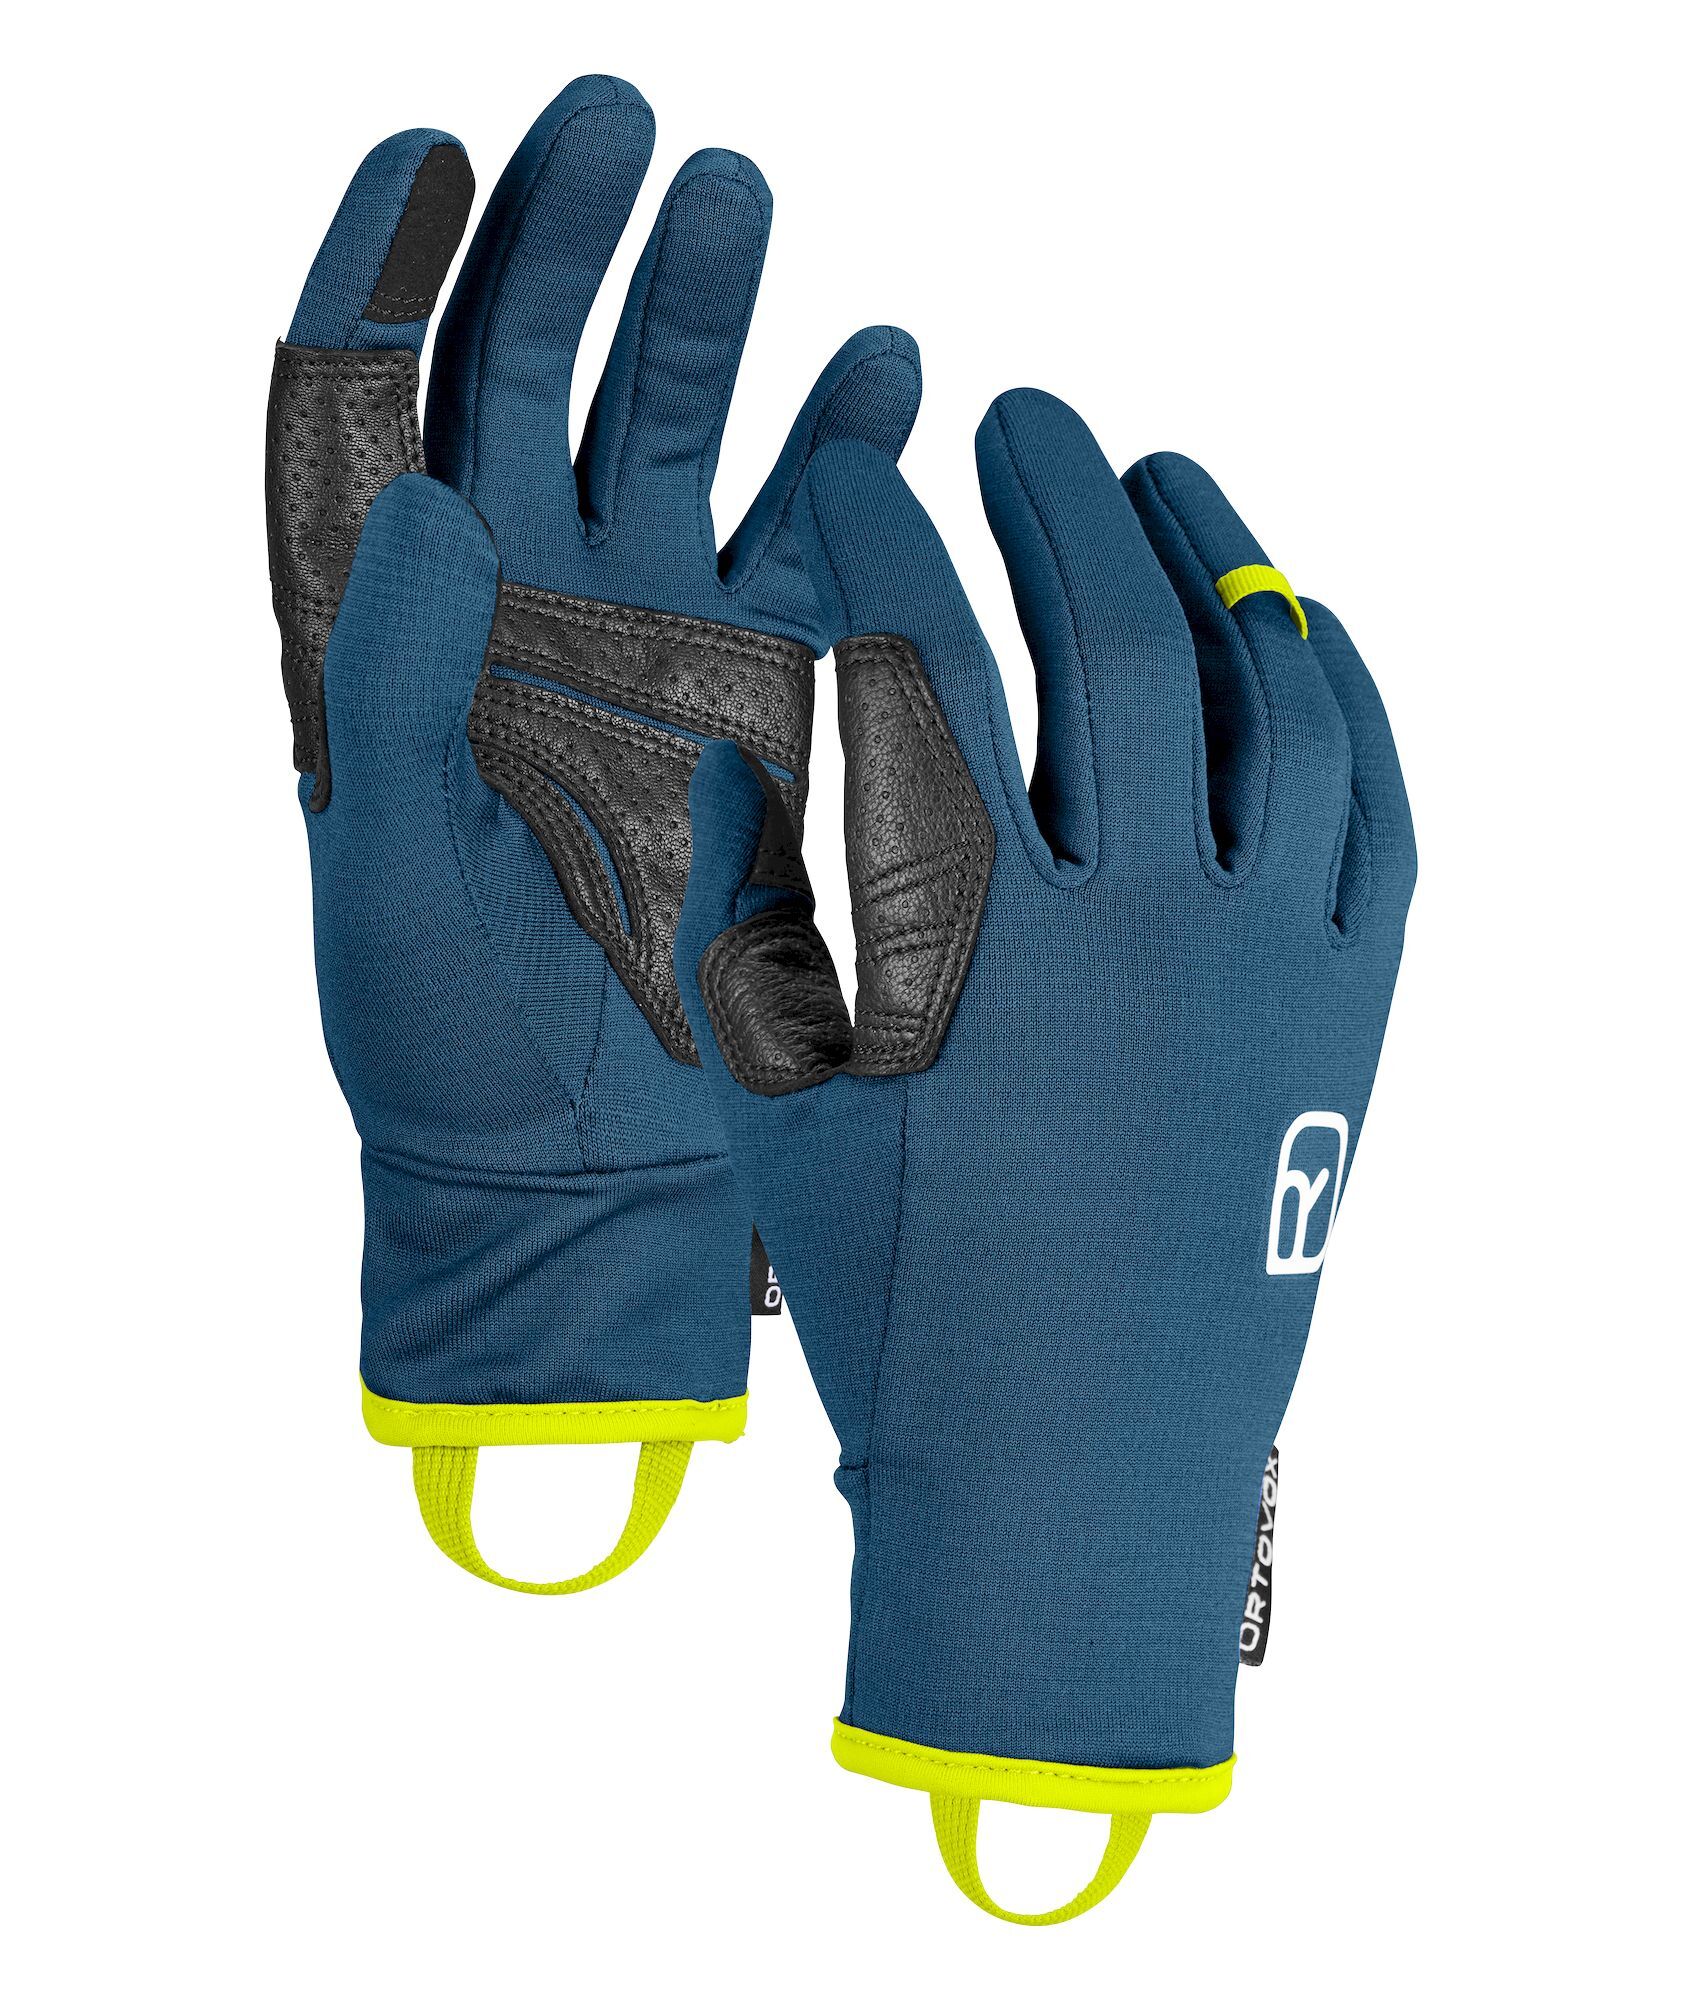 Ortovox Fleece Light Glove - Ski gloves - Men's